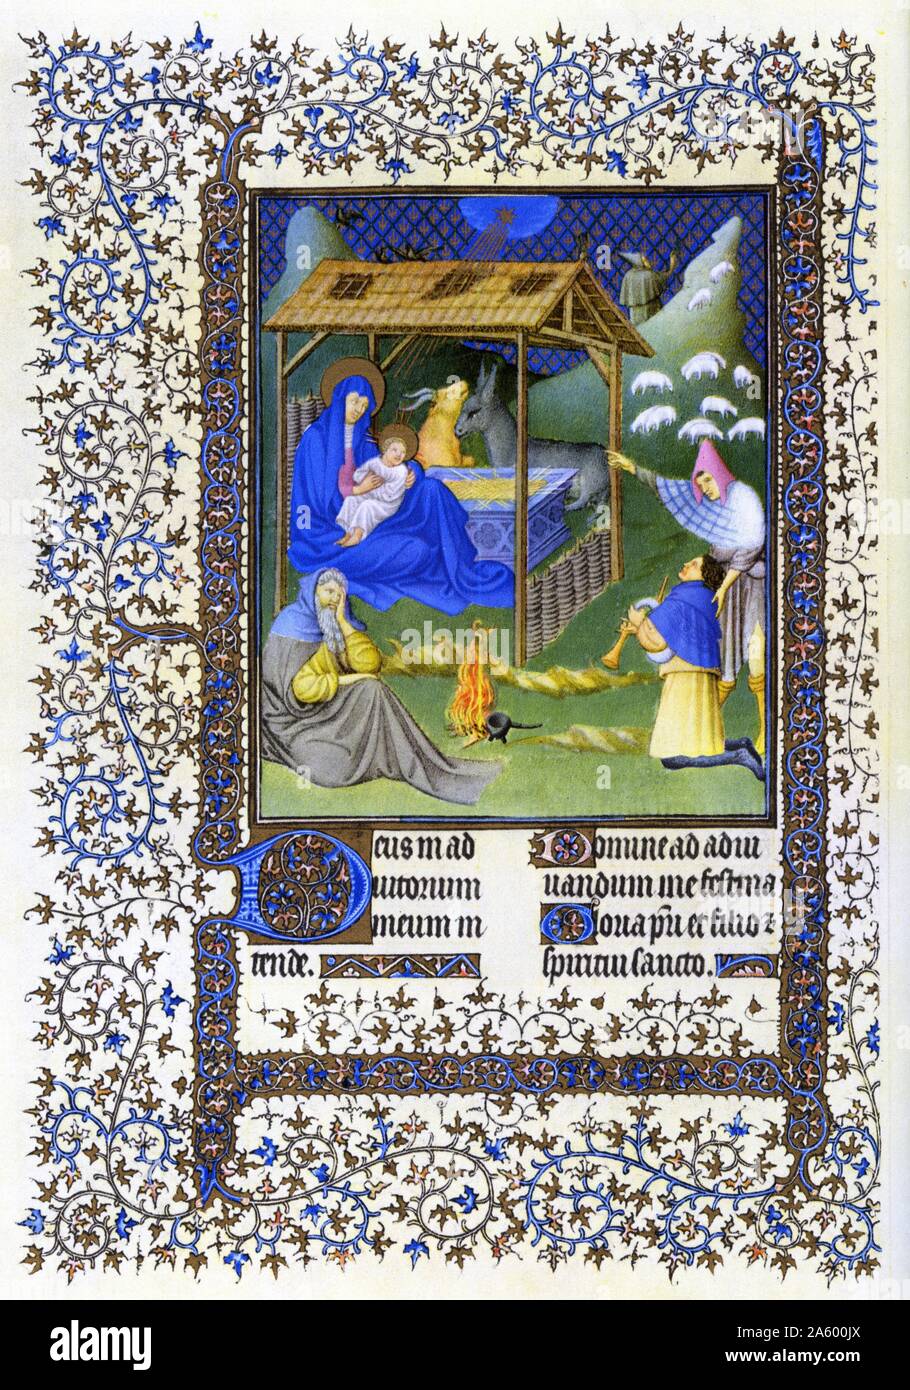 Darstellung der Geburt Christi von Belles Heures von Jean de France, Duc de Berry (schöne Stunden) eine frühe 15. Jahrhundert illuminierte Handschrift Buch von Stunden Beleuchtung. Vom 15. Jahrhundert Stockfoto